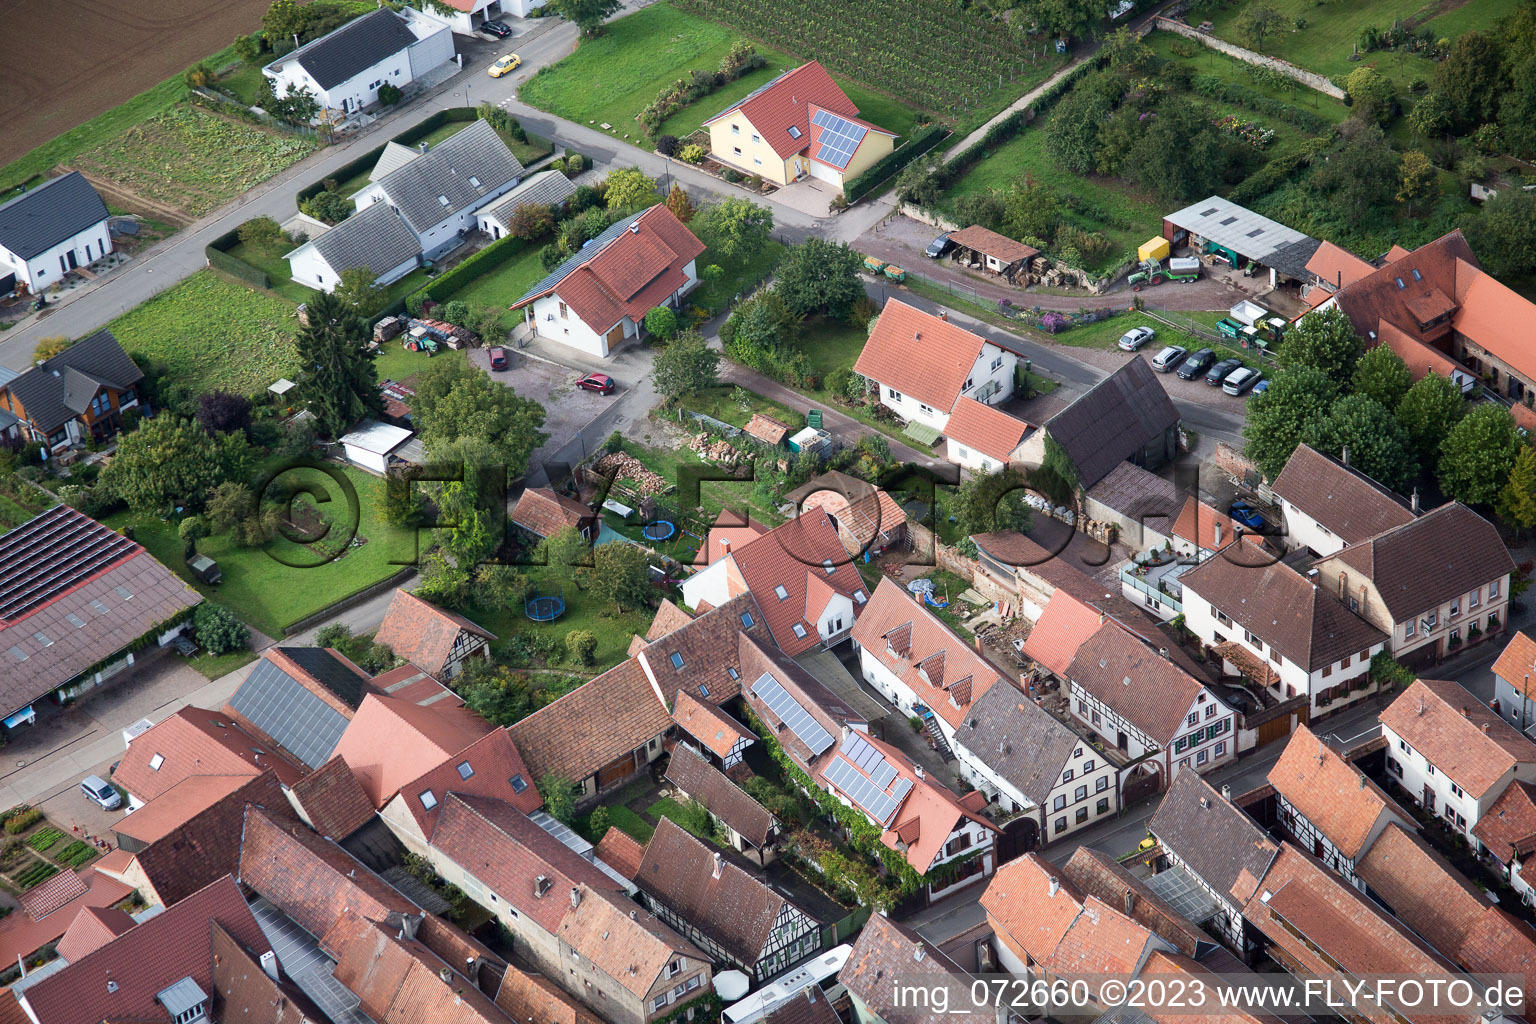 District Heuchelheim in Heuchelheim-Klingen in the state Rhineland-Palatinate, Germany from the plane